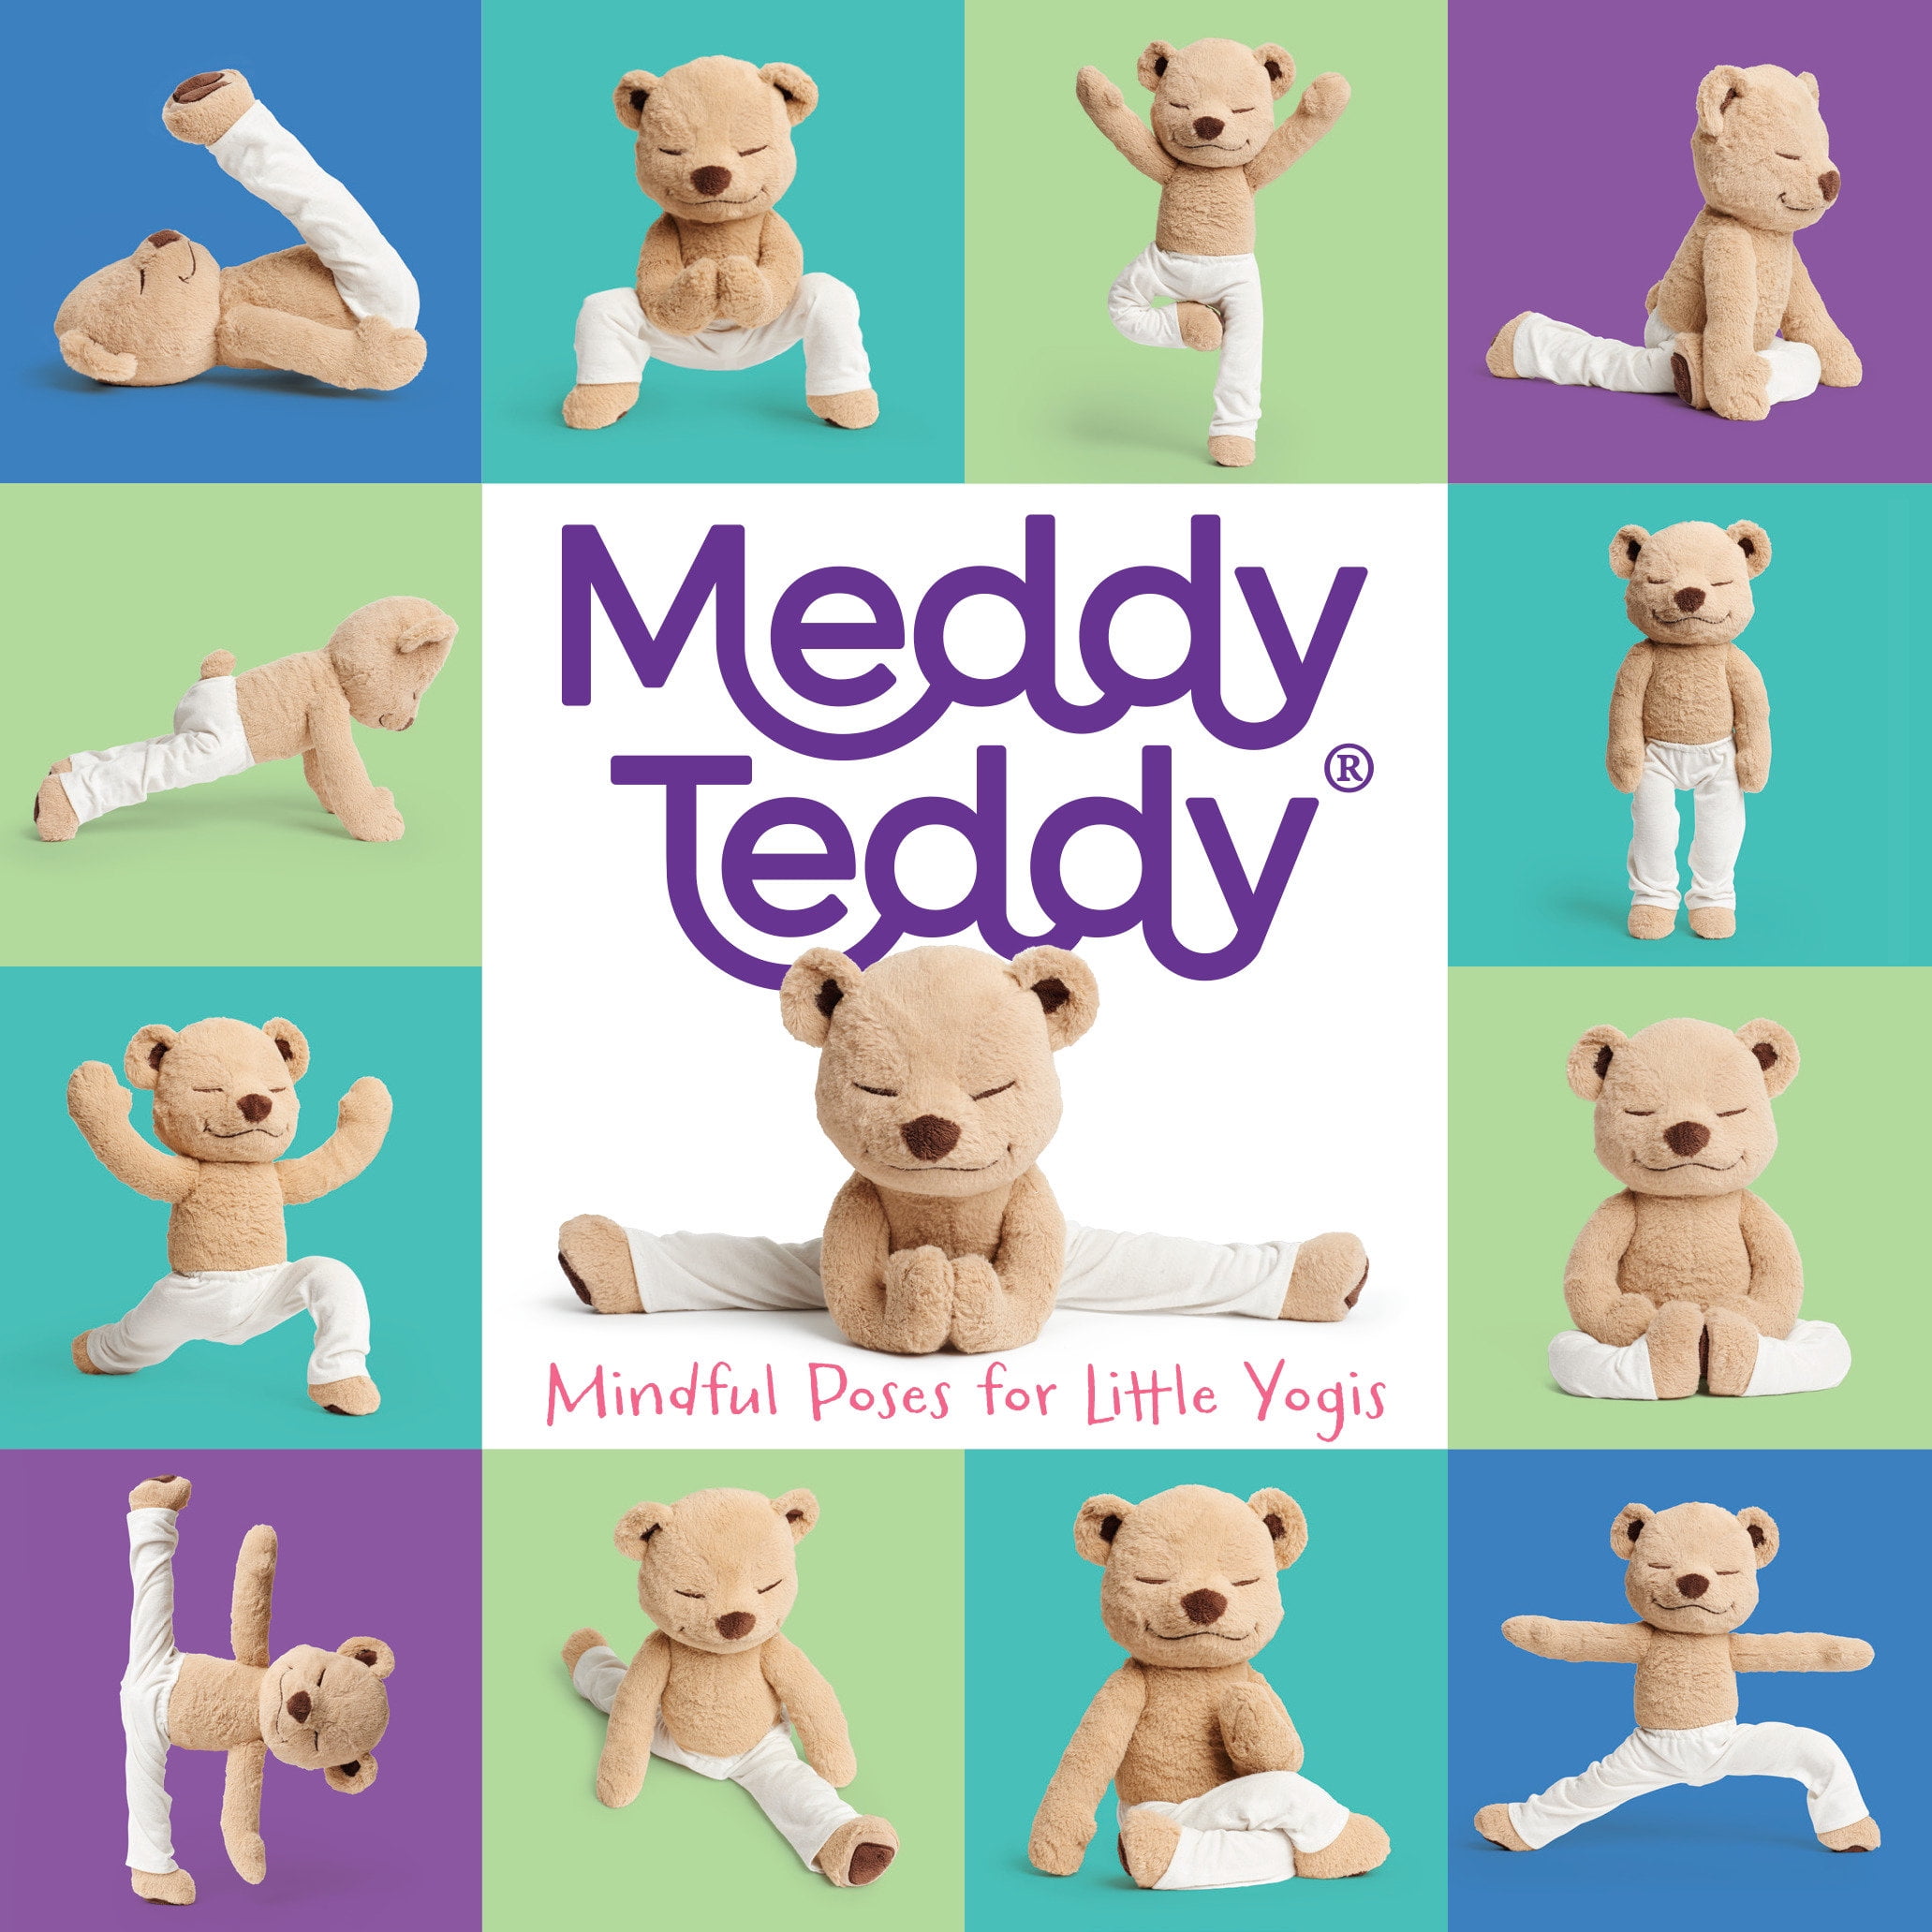 meddy teddy accessories